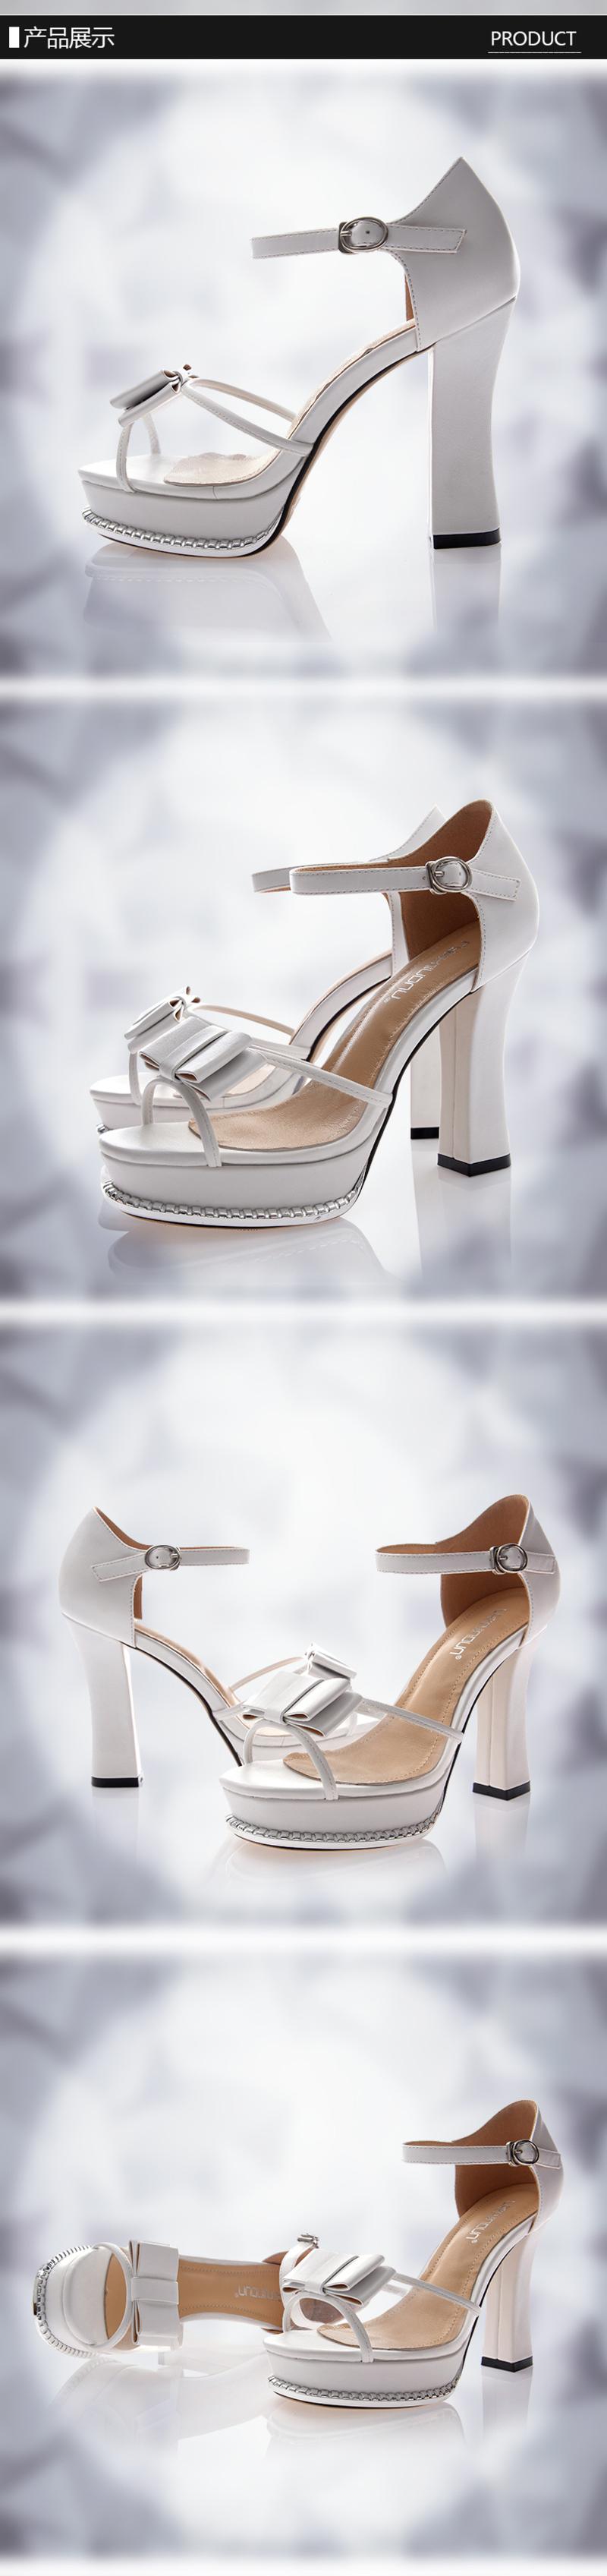 莱卡金顿2014夏款时装凉鞋防水台高跟鱼嘴性感蝴蝶结方跟包跟女鞋LK-A3033